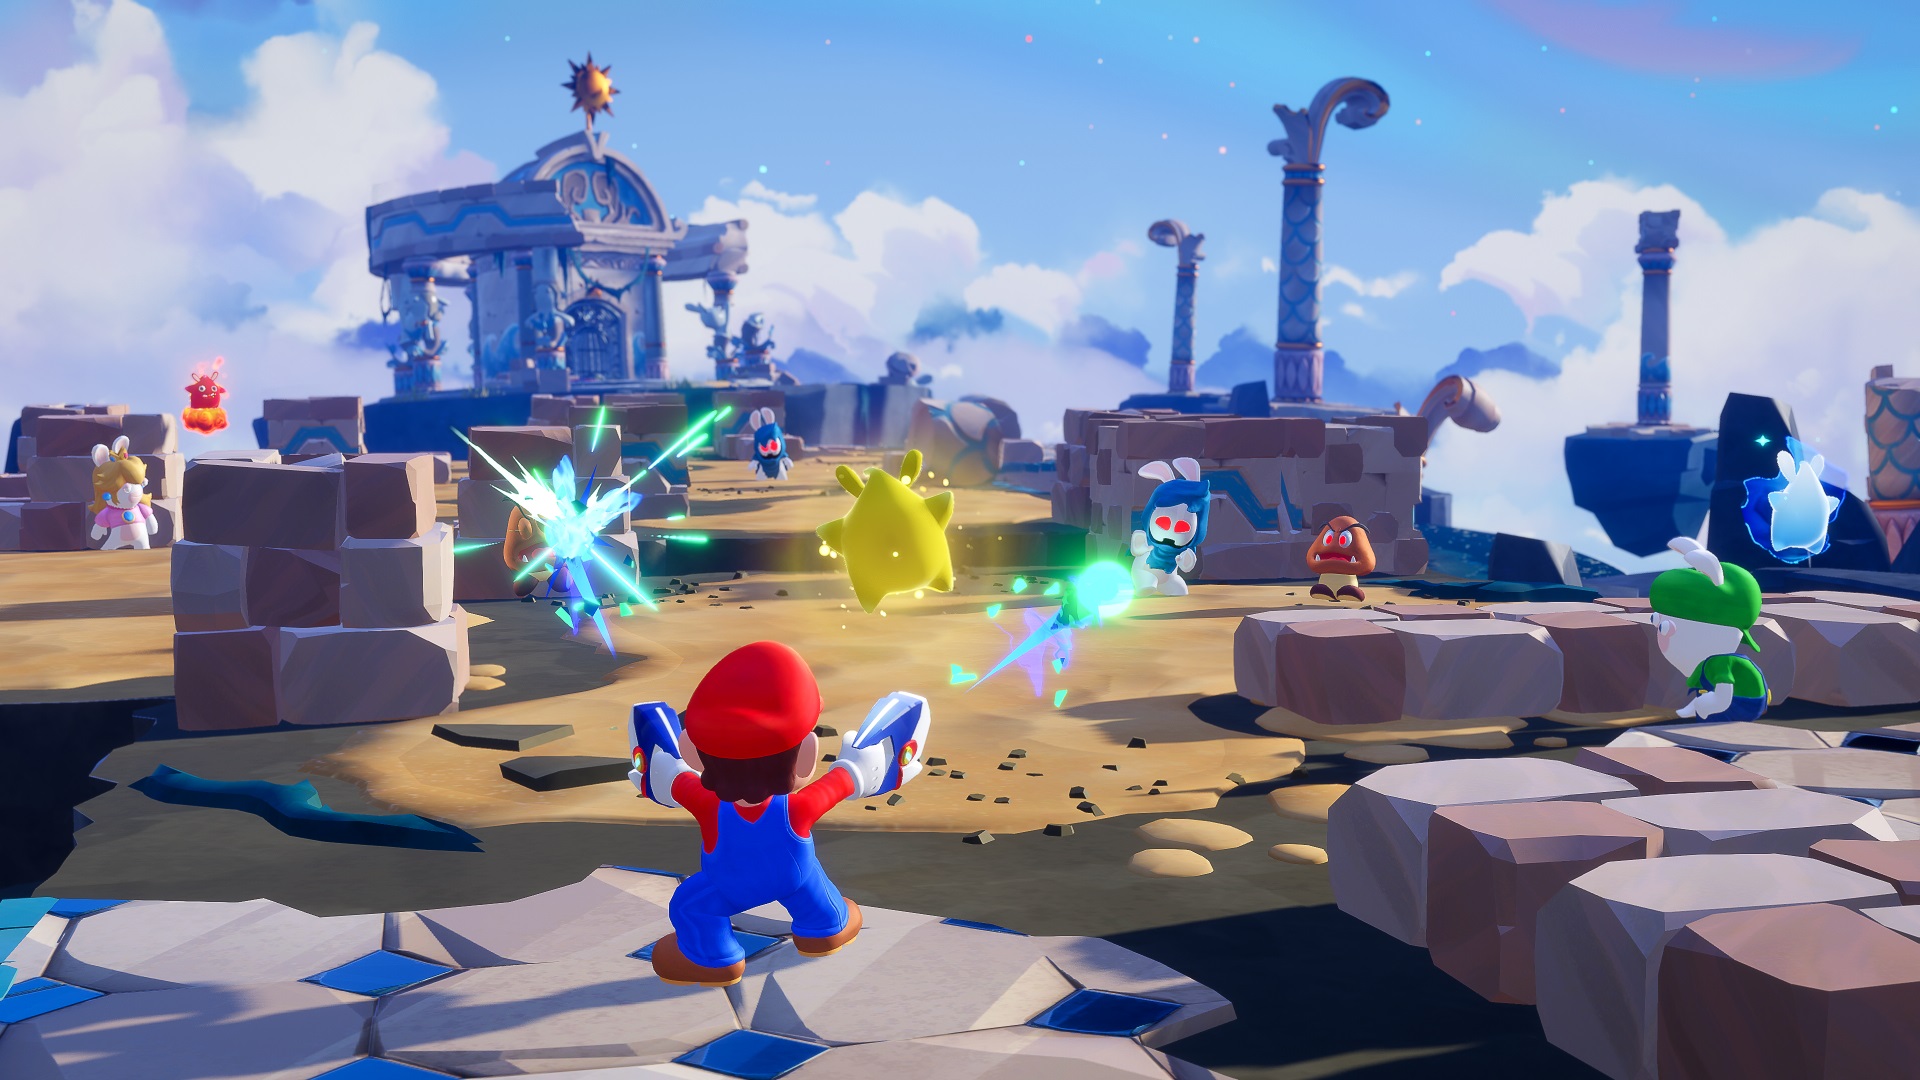 Mario + Rabbids Should Have Been Released on Nintendo’s Next Platform – Ubisoft CEO